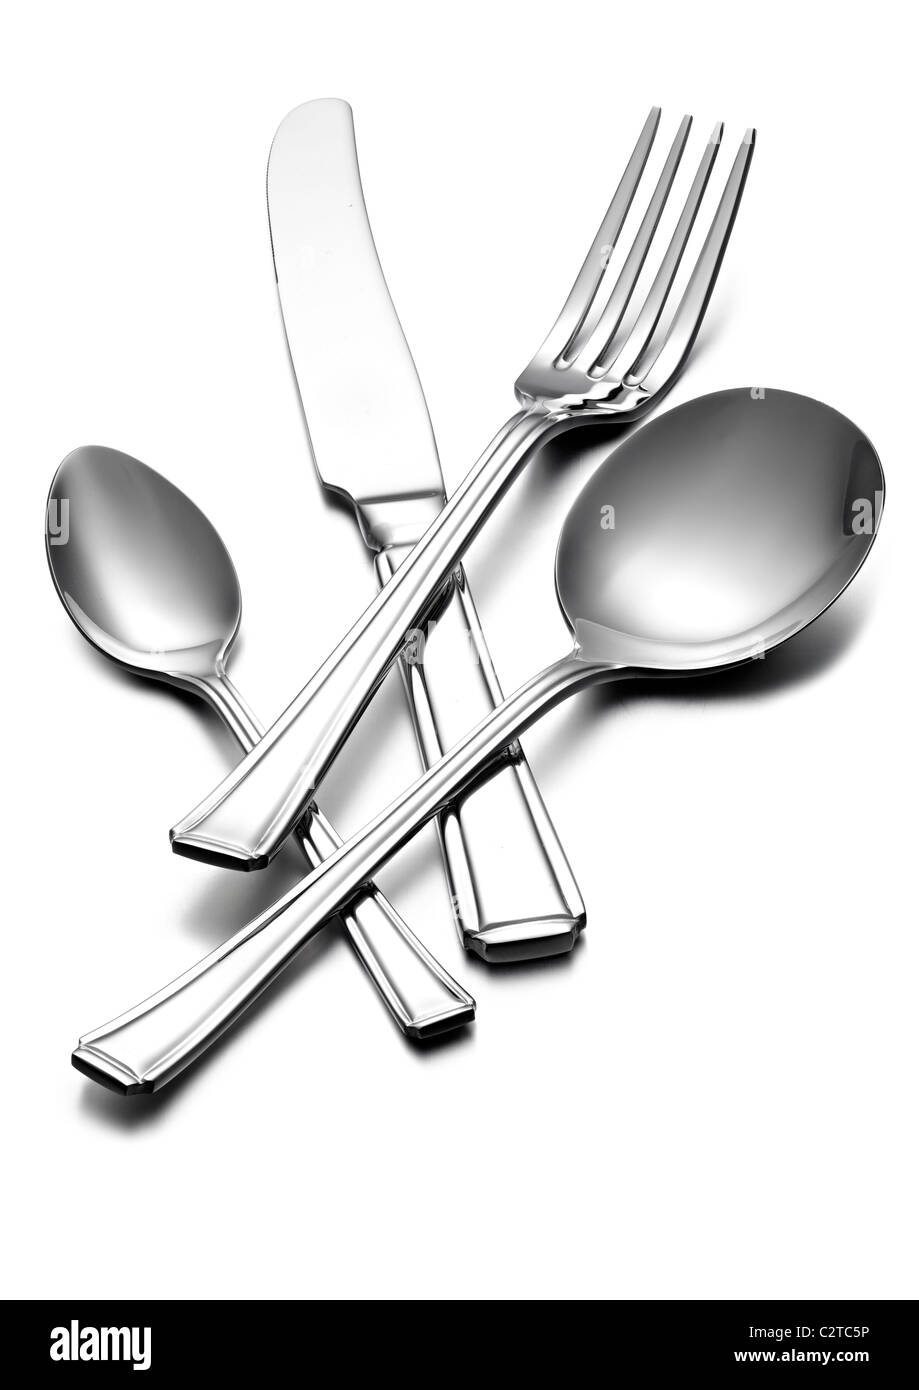 Shiny cutlery Stock Photo